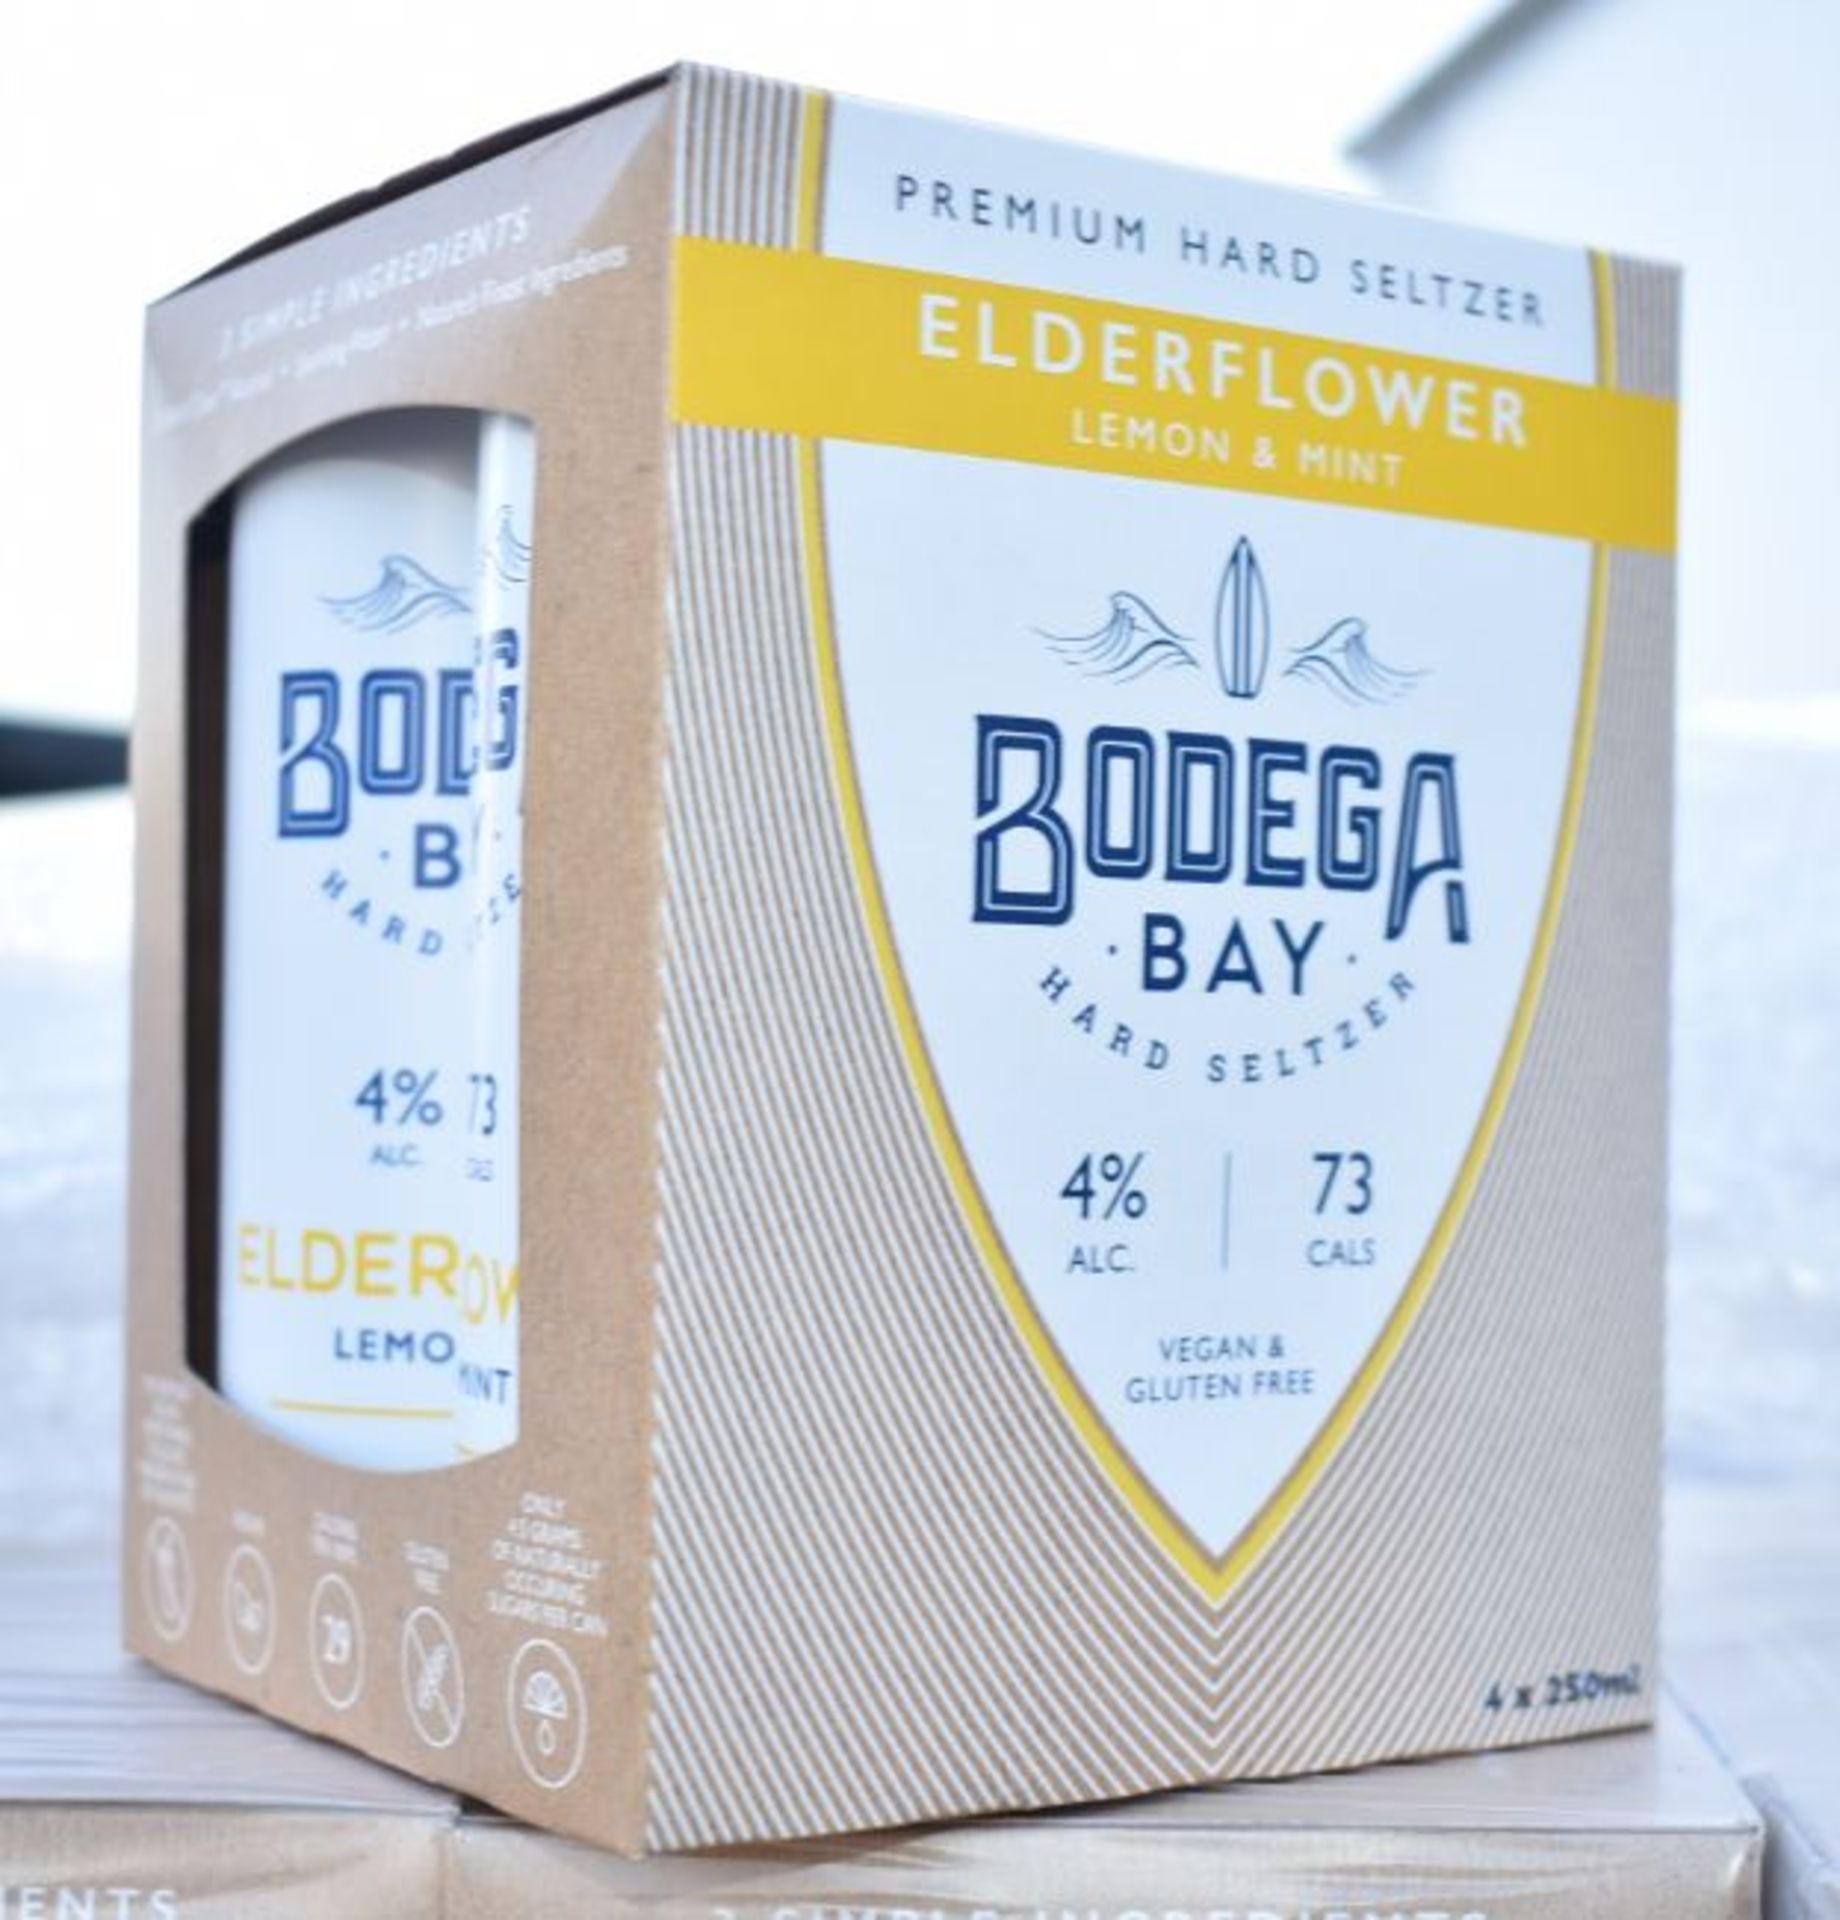 24 x Bodega Bay Hard Seltzer 250ml Alcoholic Sparkling Water Drinks - Elderflower Lemon & Mint - - Image 8 of 9